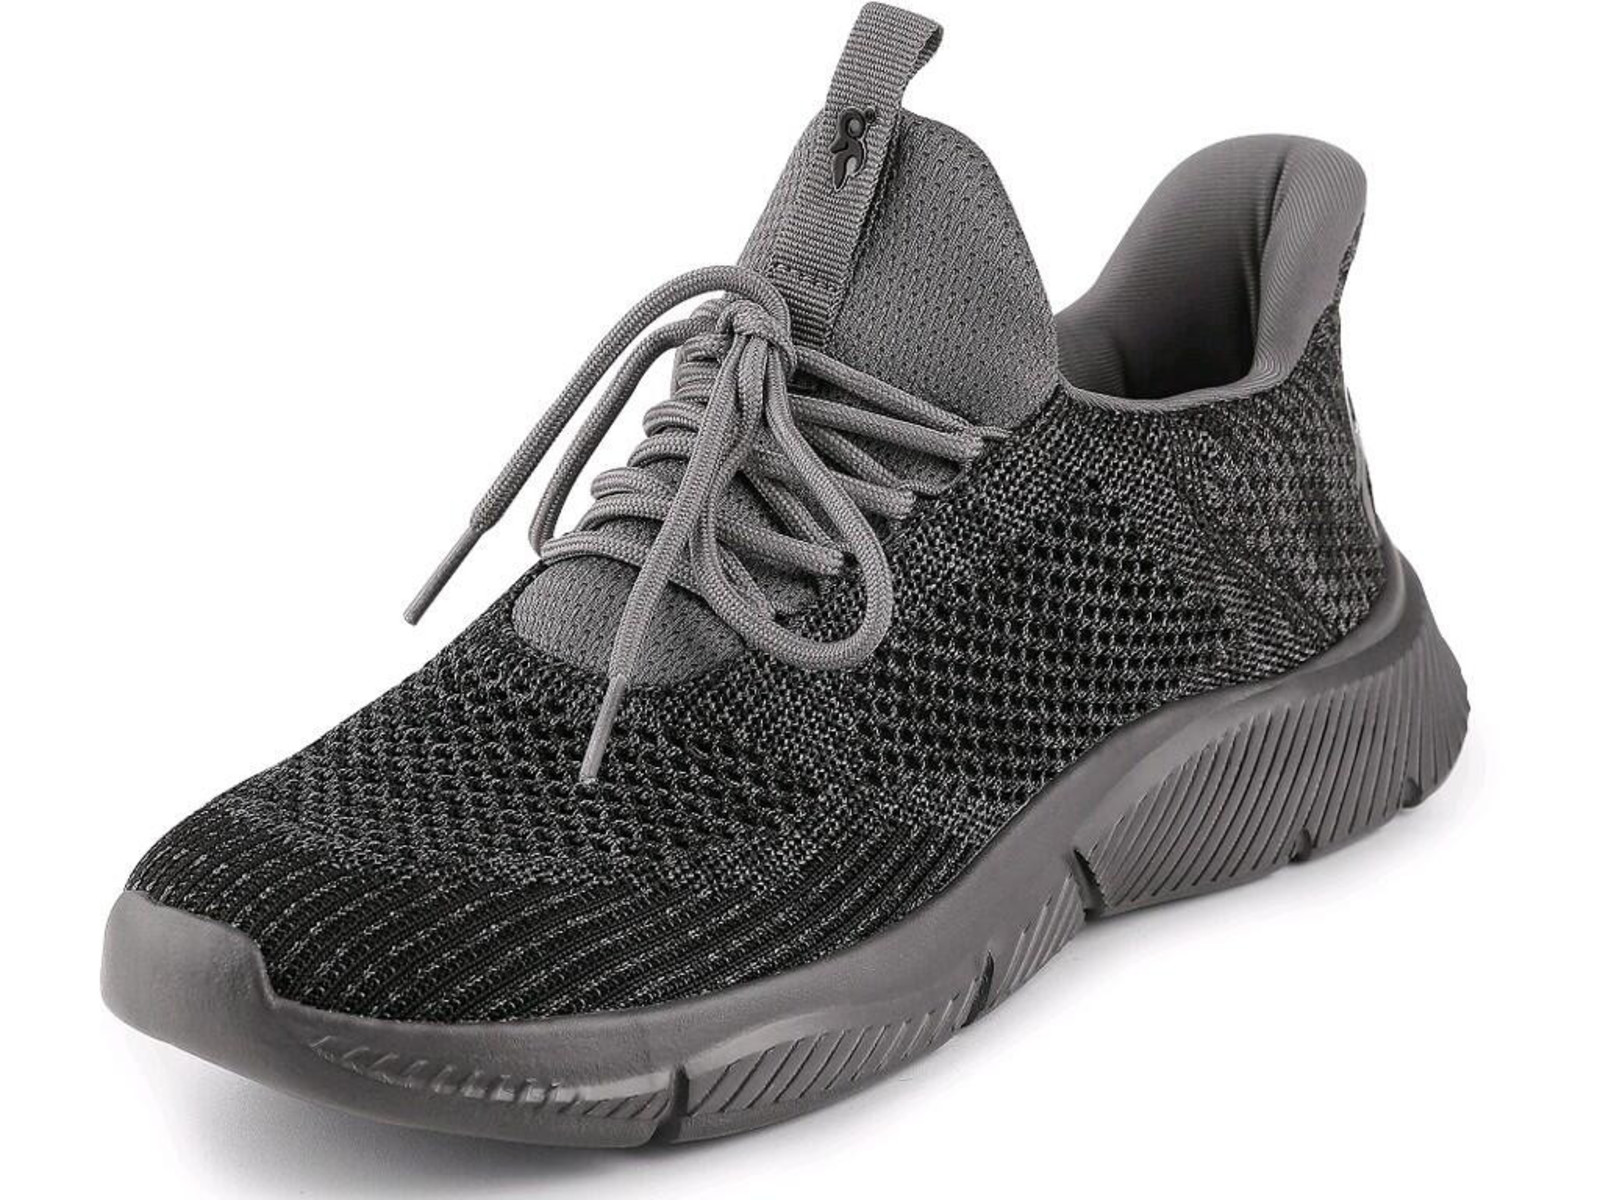 Voľnočasová obuv CXS Island Barbados - veľkosť: 47, farba: sivá/čierna